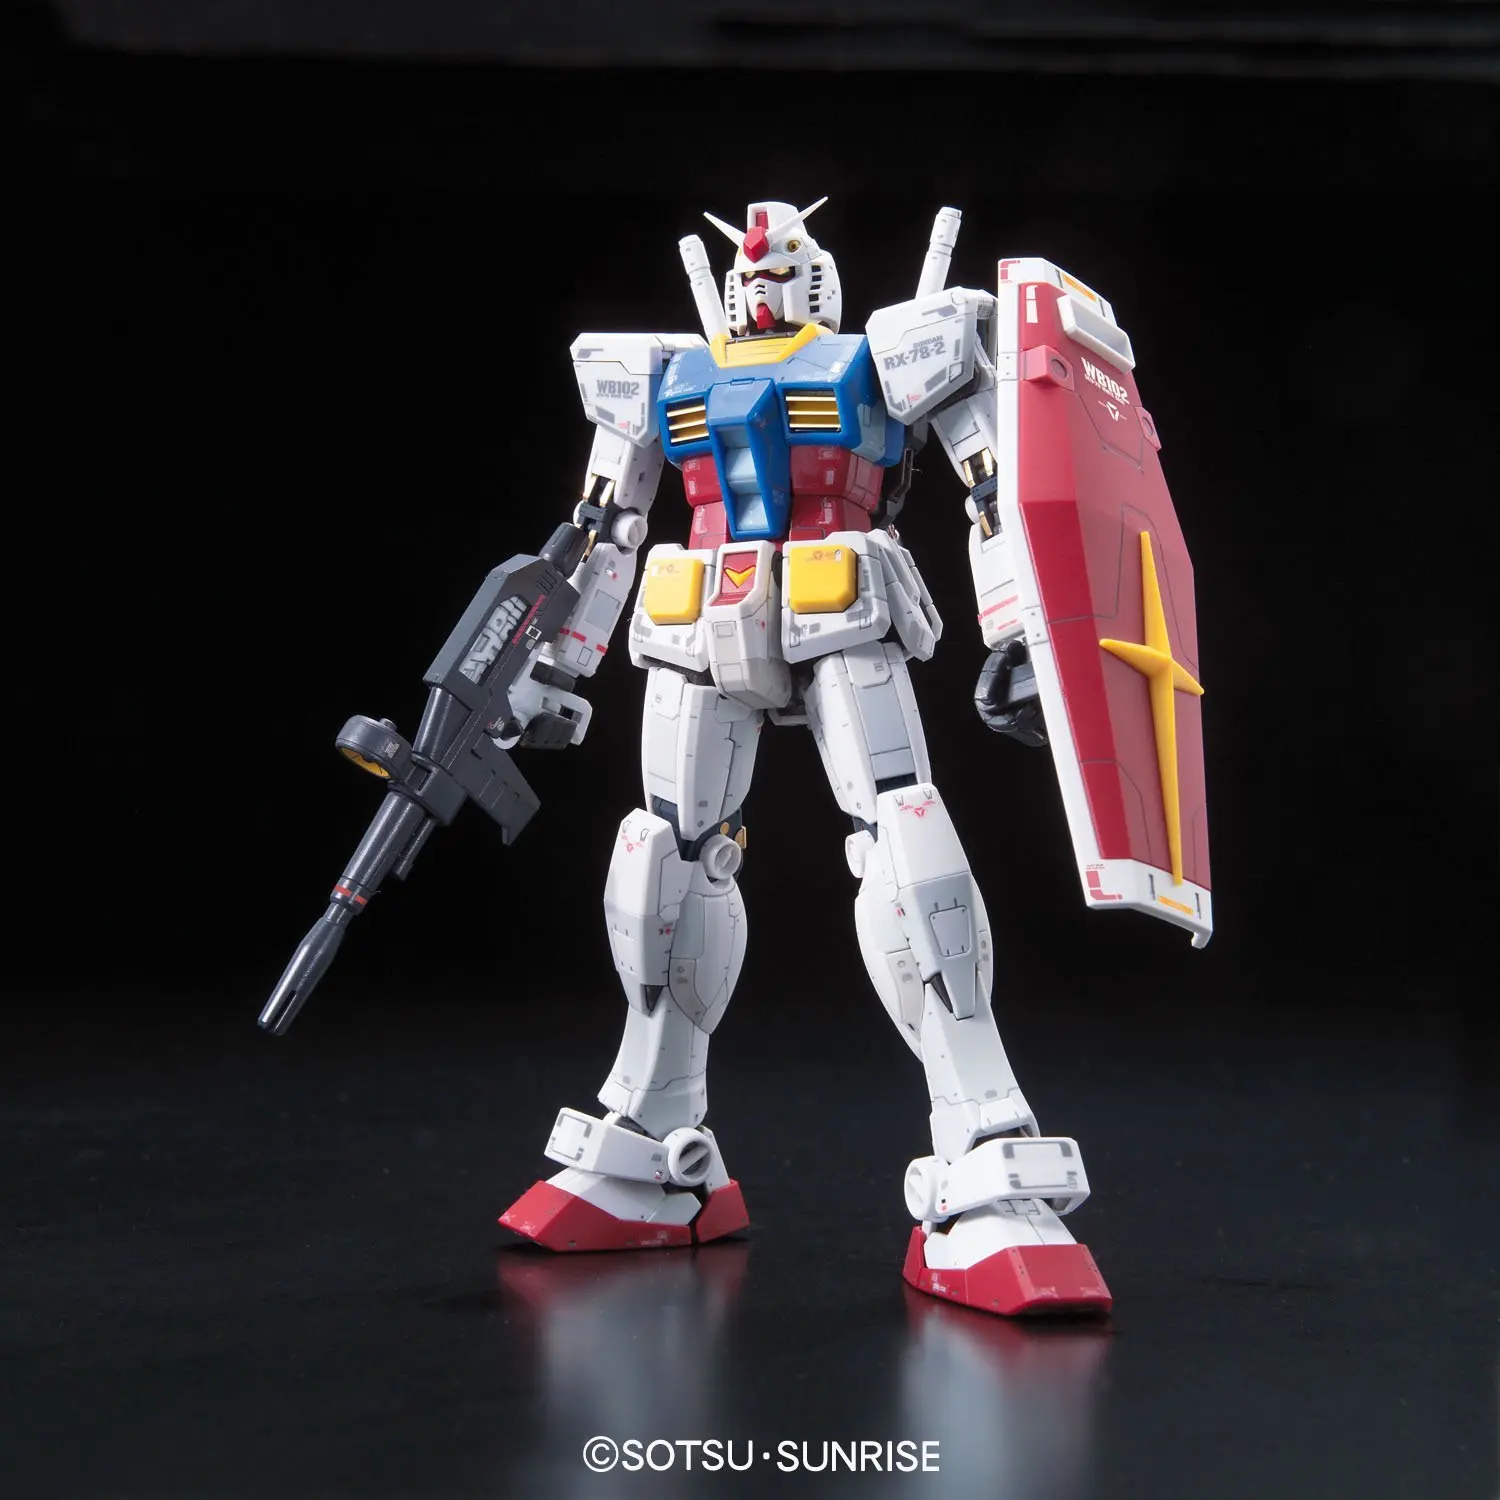 Bandai Gundam RG 1/144 RX-78-2 мобильный костюм Сборная модель наборы фигурки пластмассовые игрушечные модели